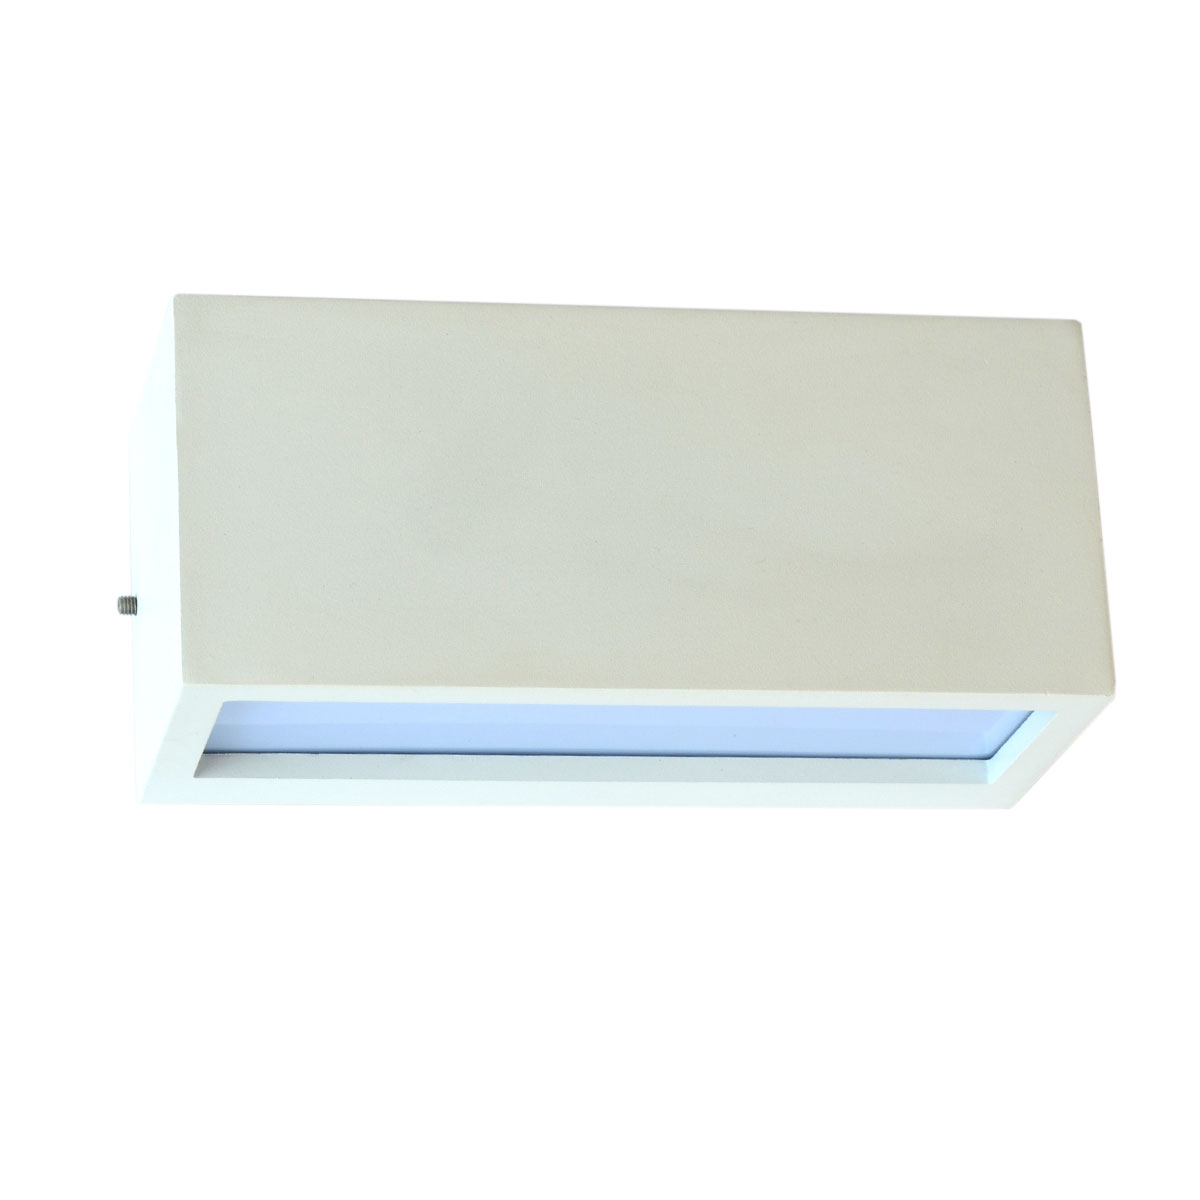 الأضاءة خارجية و داخلية  اللون الخارجي أبيض قاعدة الأضاءة E27- LED-5703